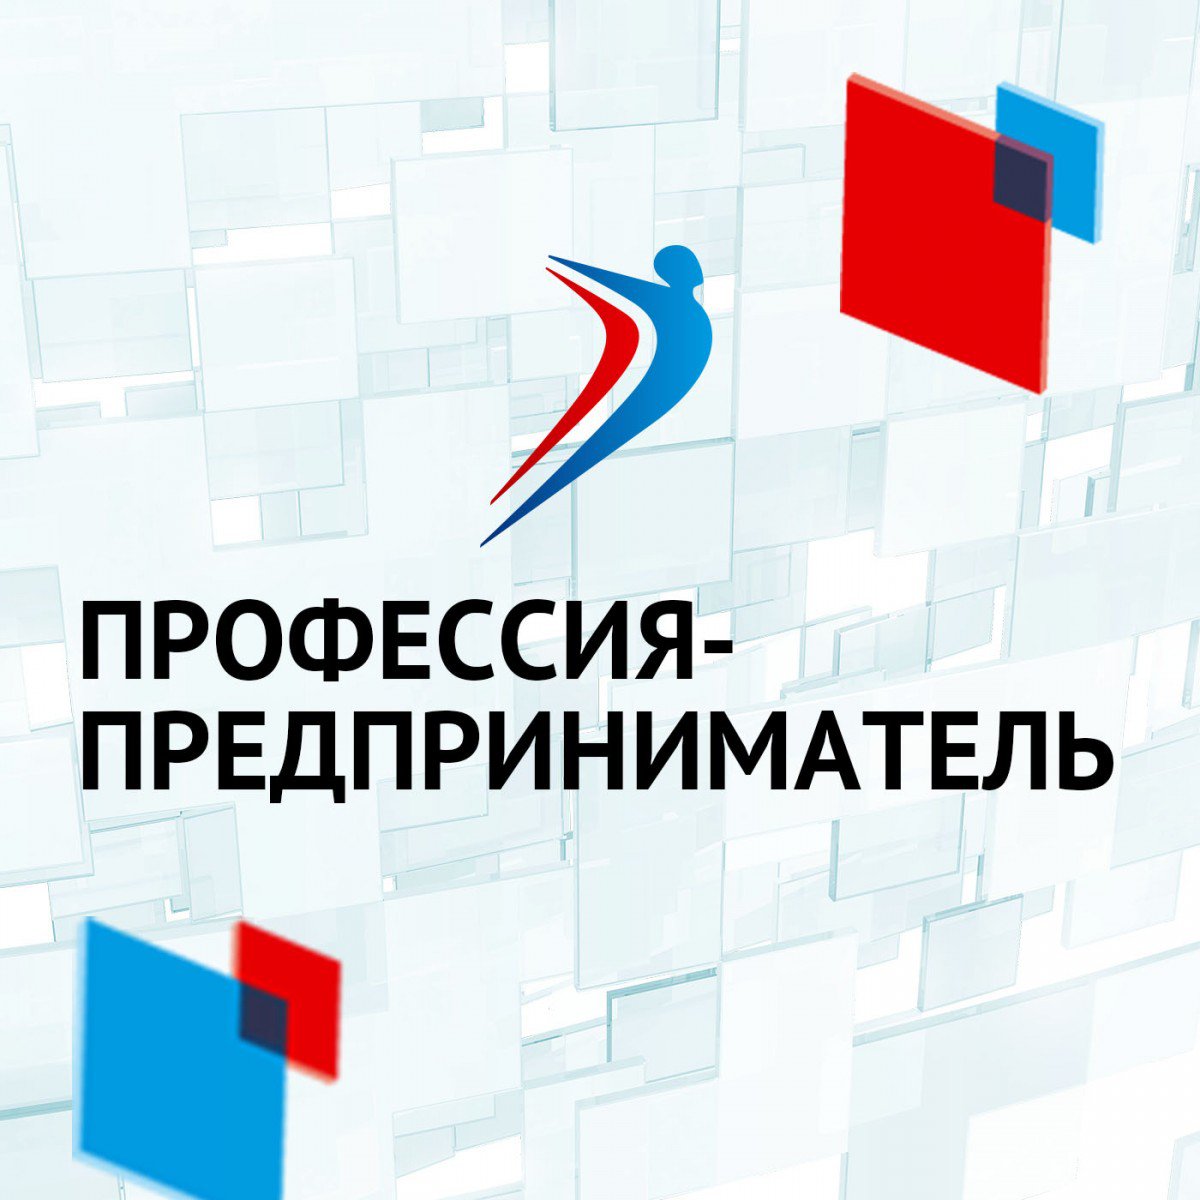 Торжественное мероприятие, посвящённое Дню российского предпринимательства.